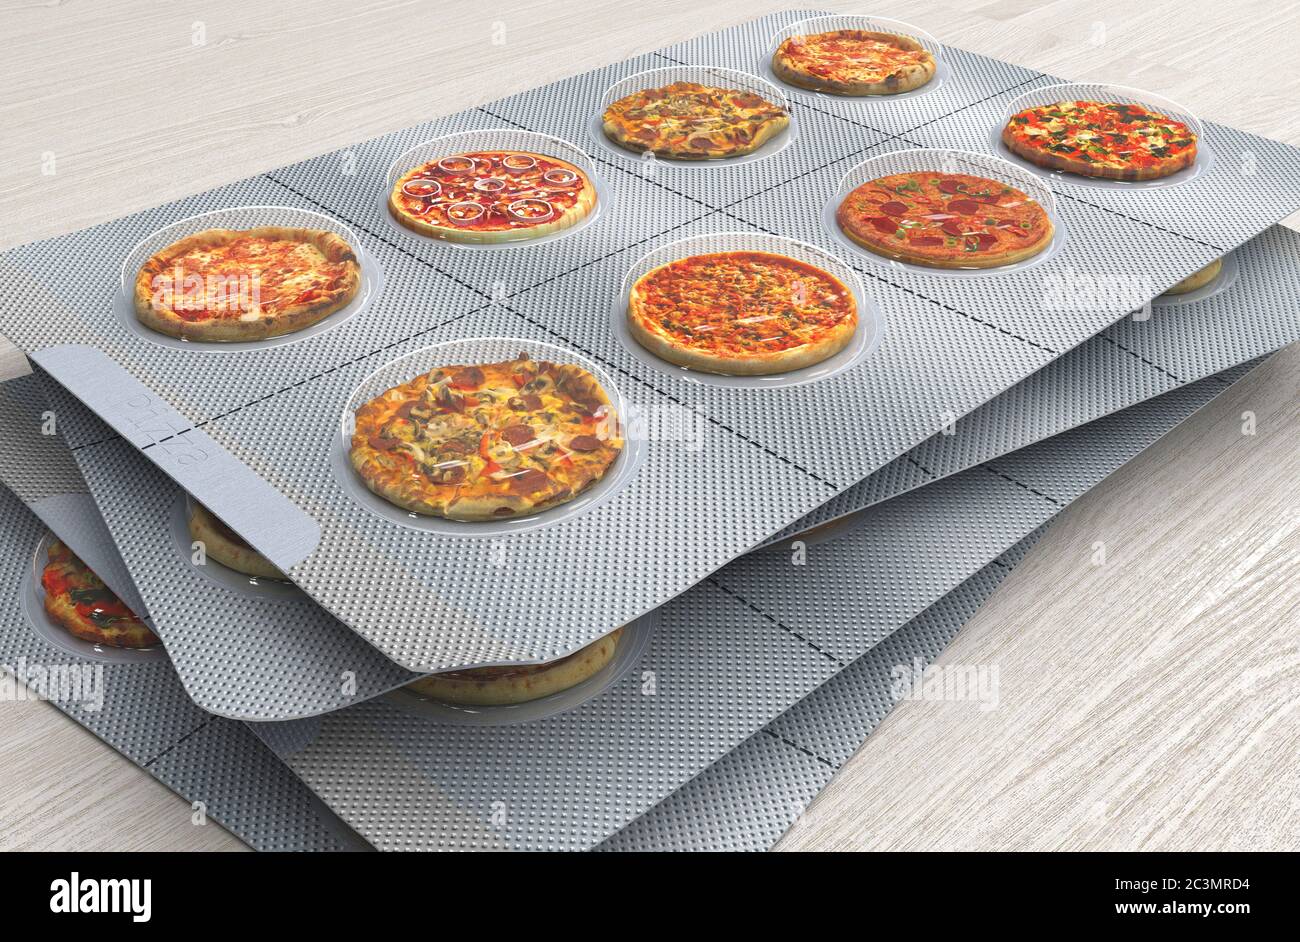 Pizza pequeña en una ampolla en lugar de pastillas. Comida rápida en tamaño de porción. Concepto creativo. Ilustración de renderización 3D. Foto de stock